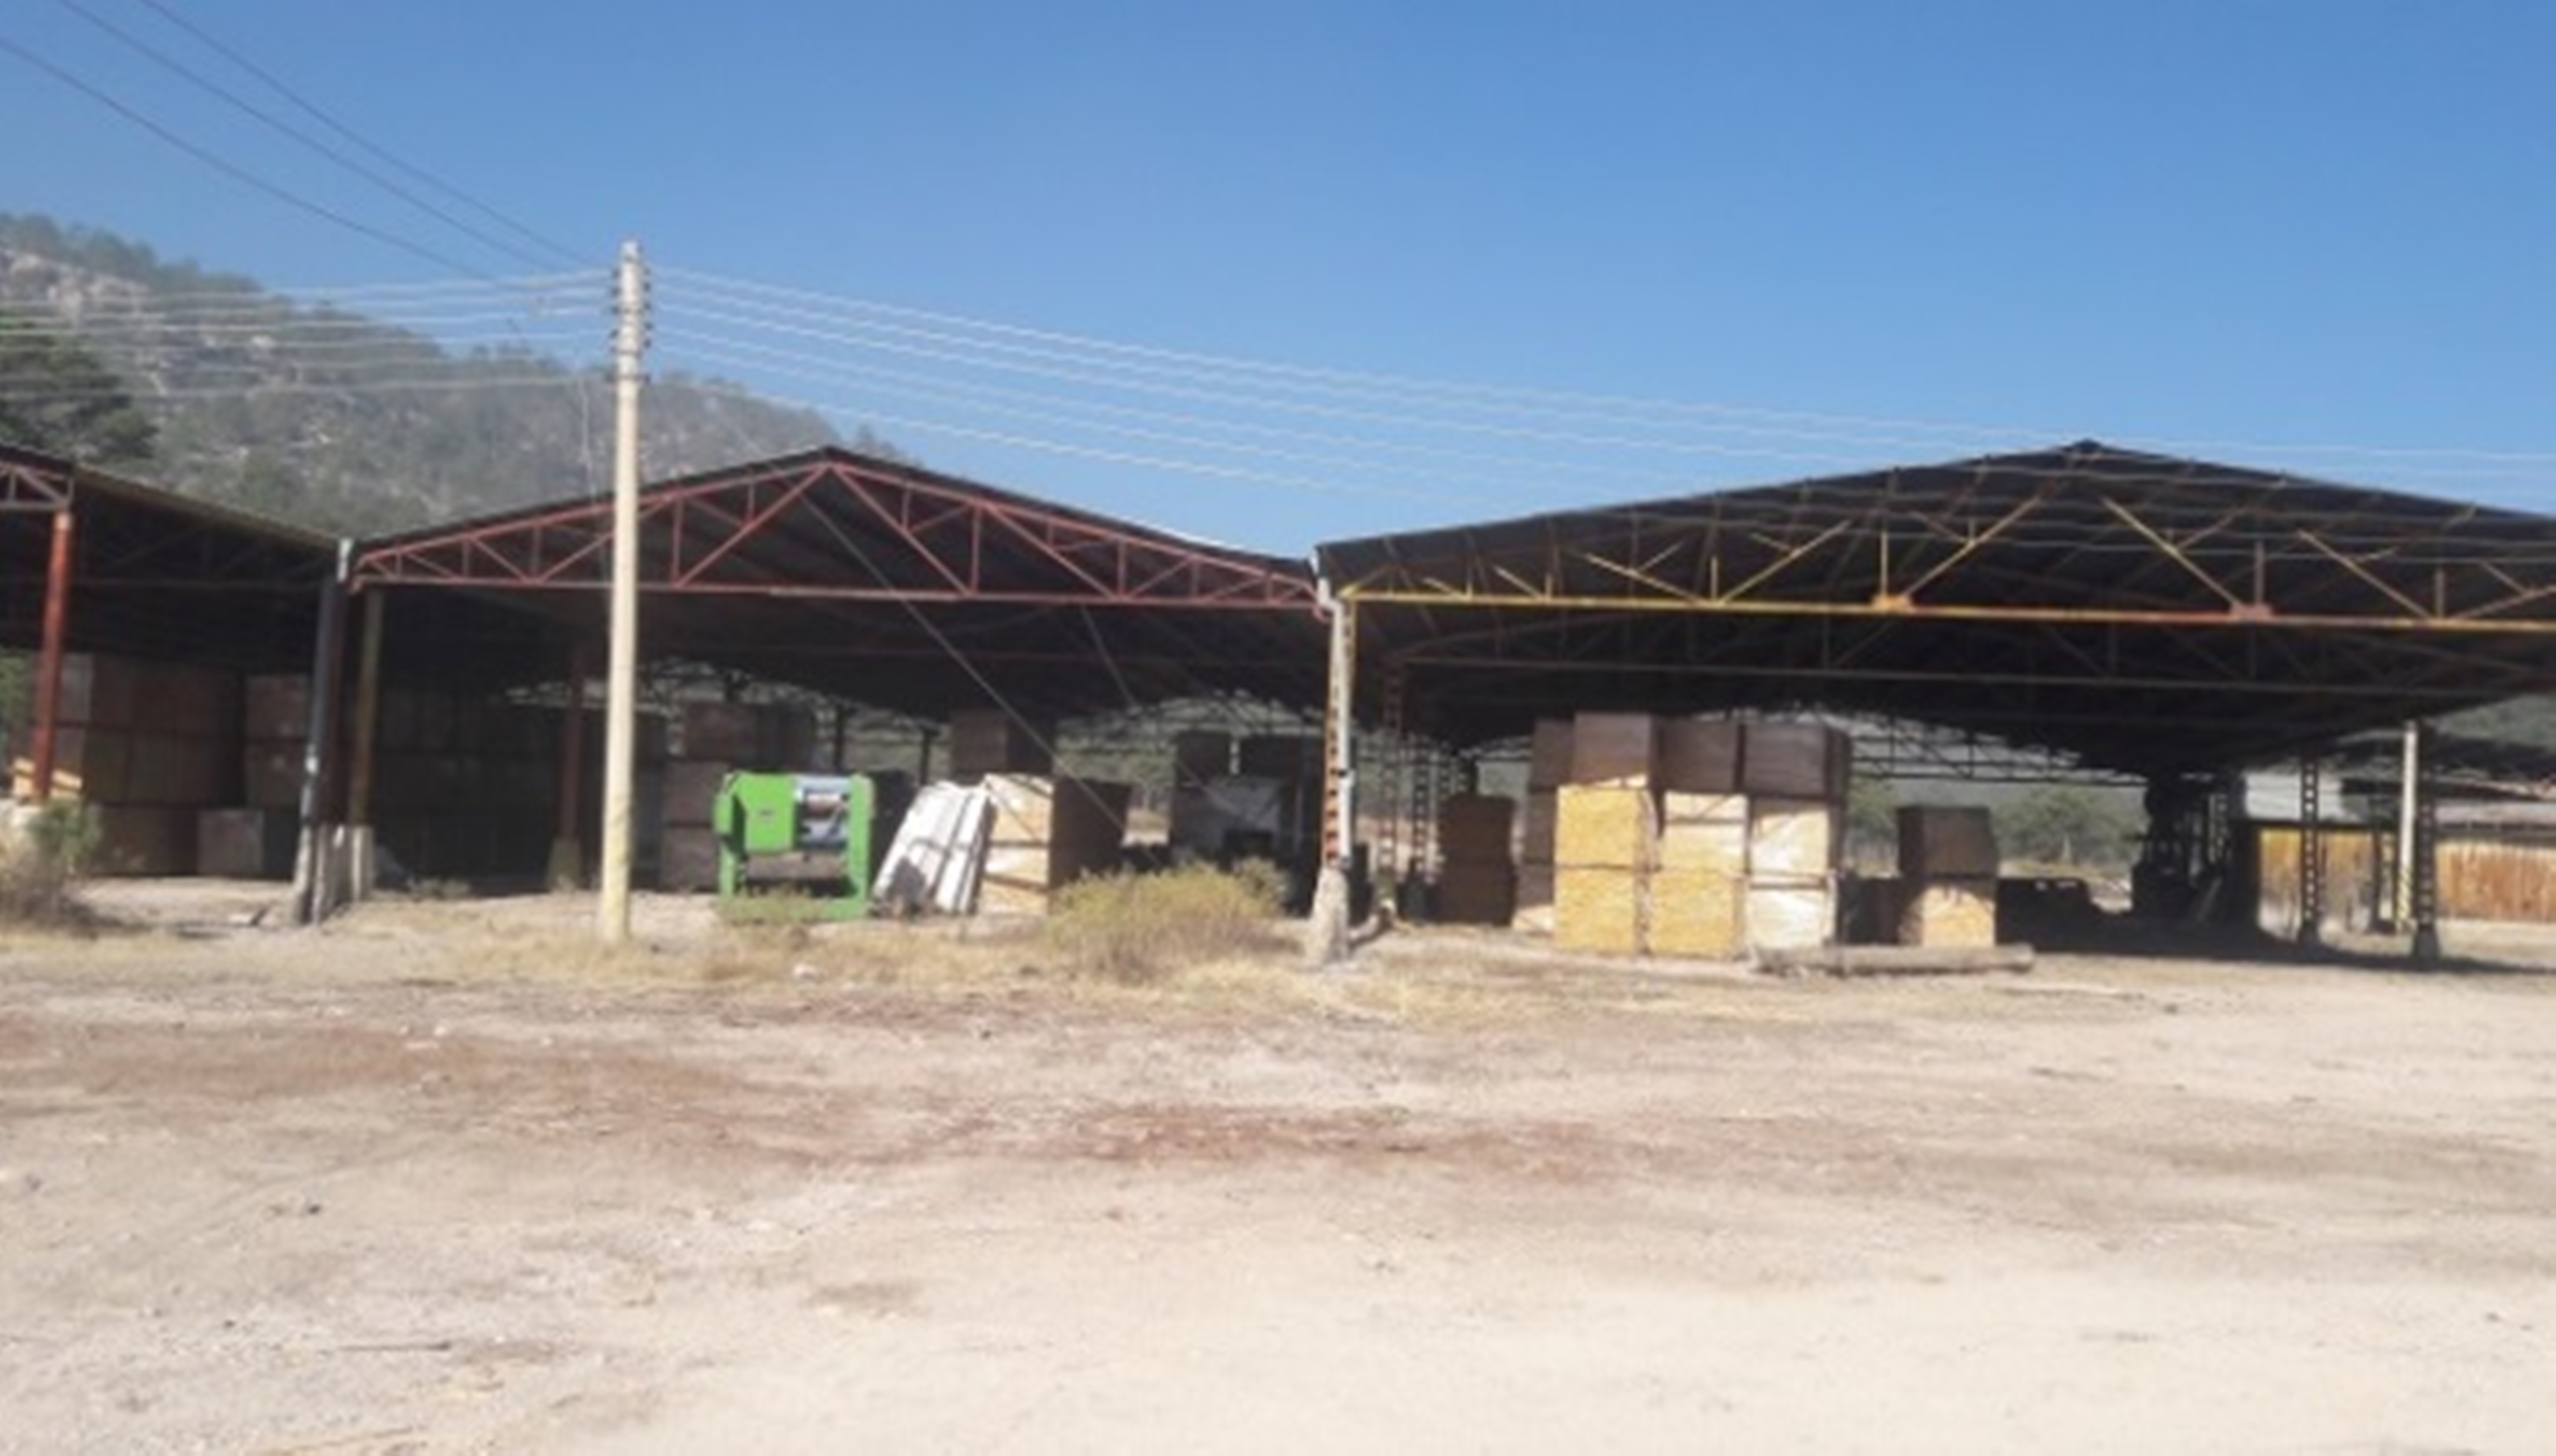 Profepa asegura madera en San Juanito, Chihuahua; los dueños no pudieron acreditar la procedencia legal de la materia prima (Profepa)